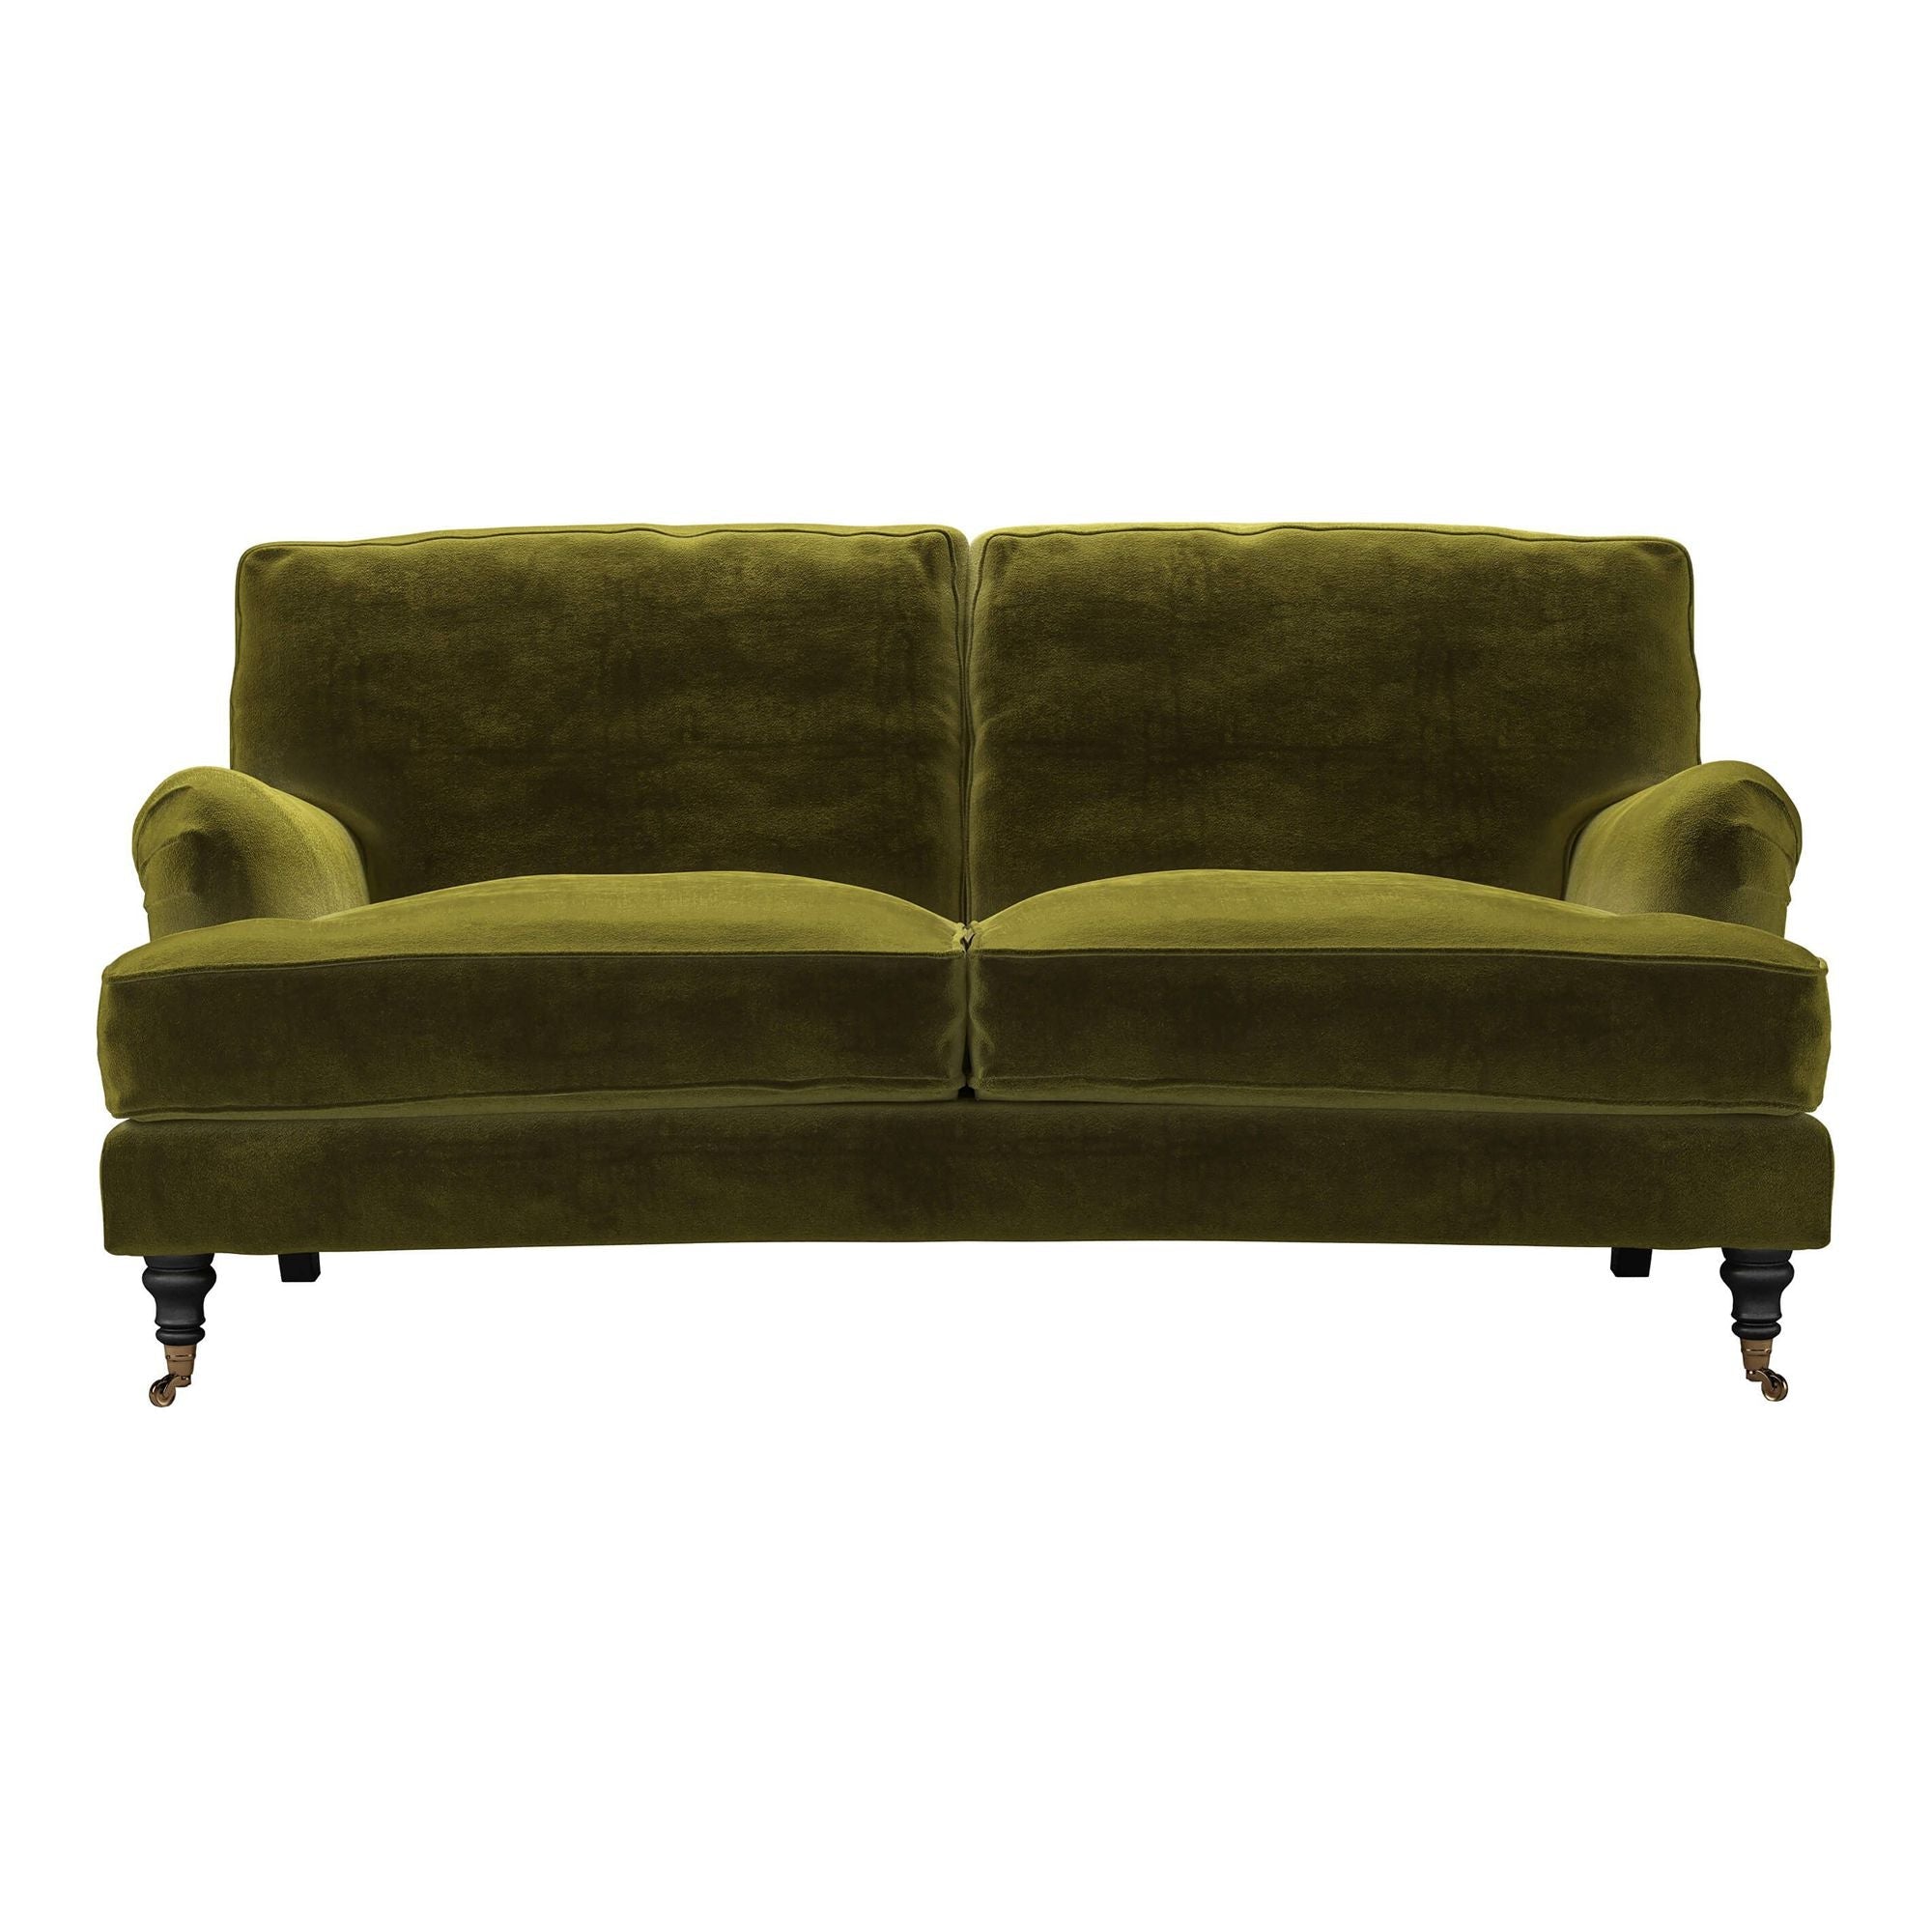 Bluebell Cotton Matt Velvet Sofa - 2.5 Seater